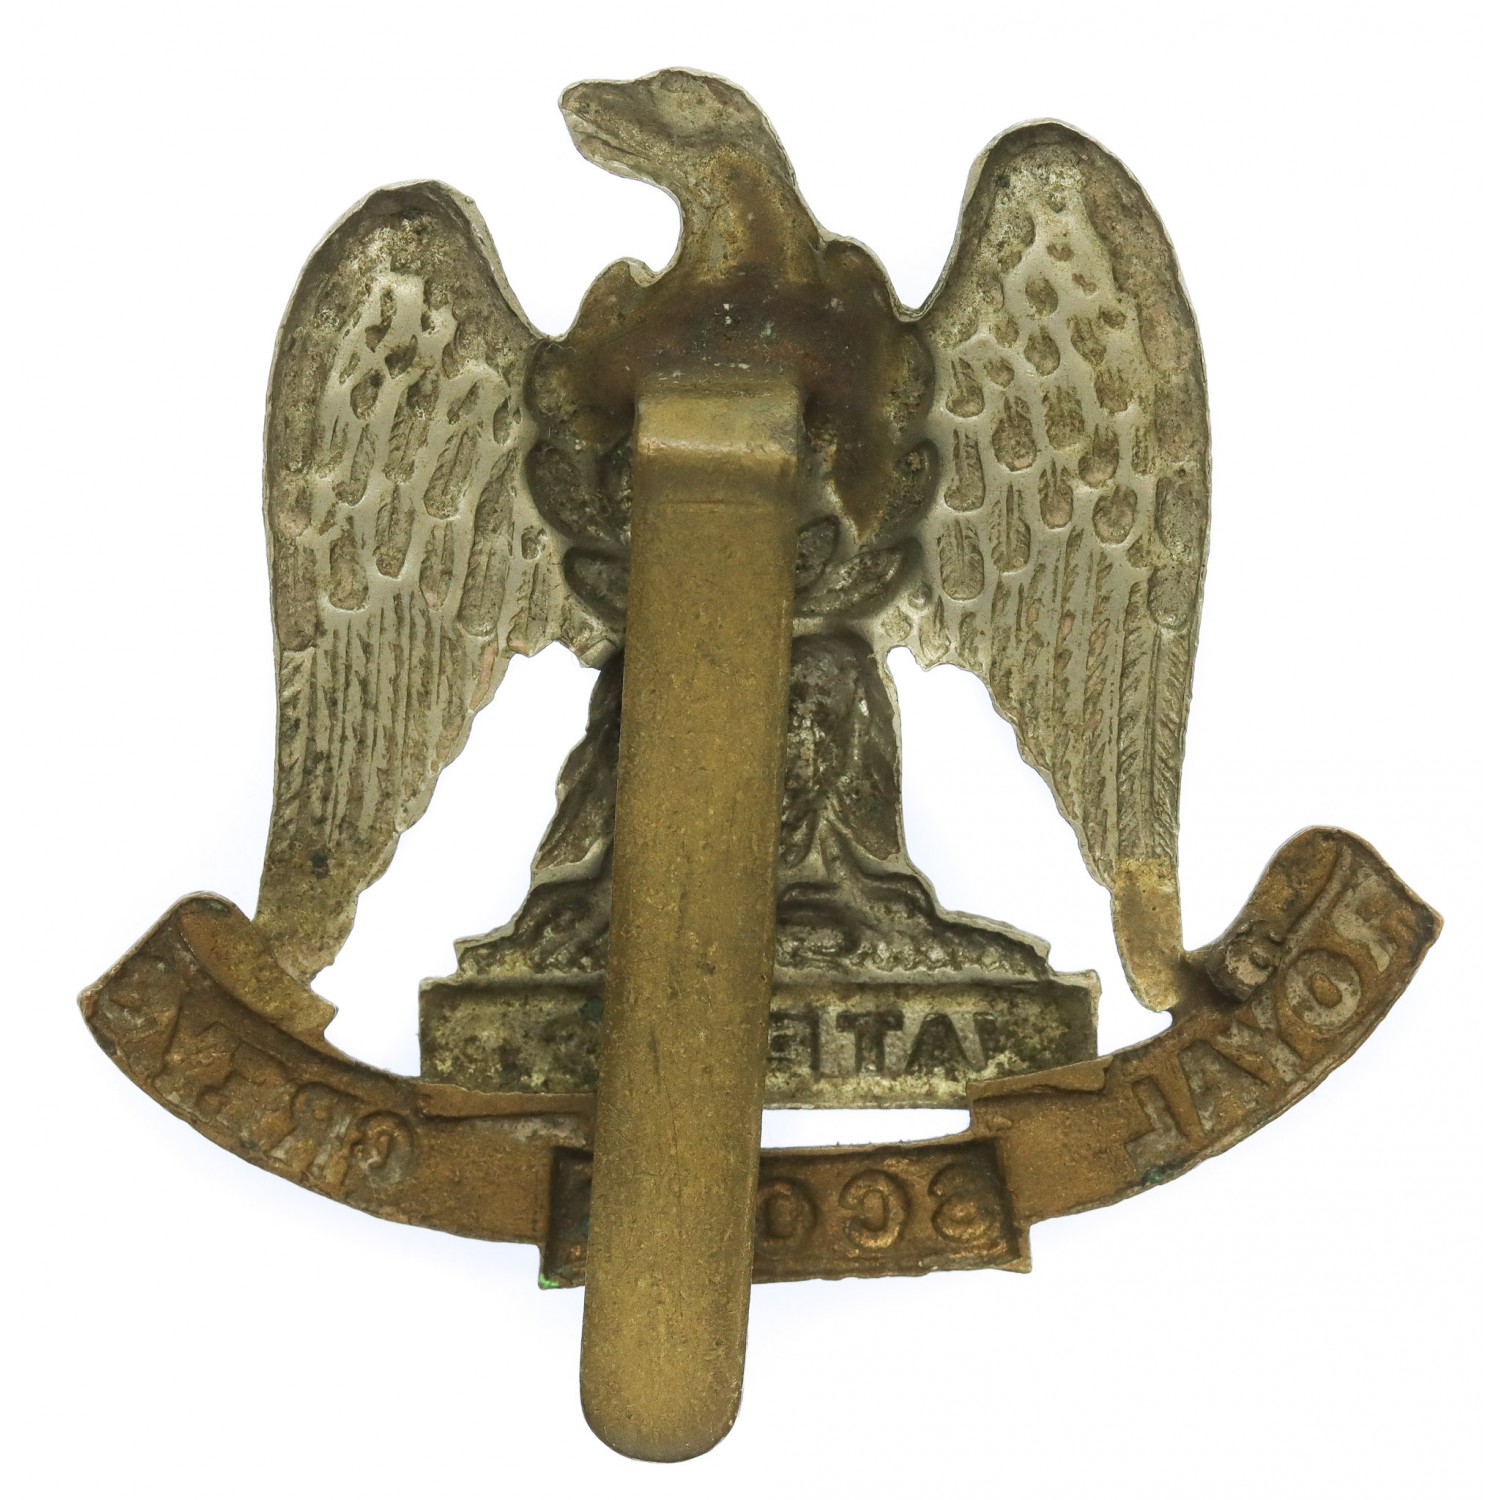 Royal Scots Greys Cap Badge